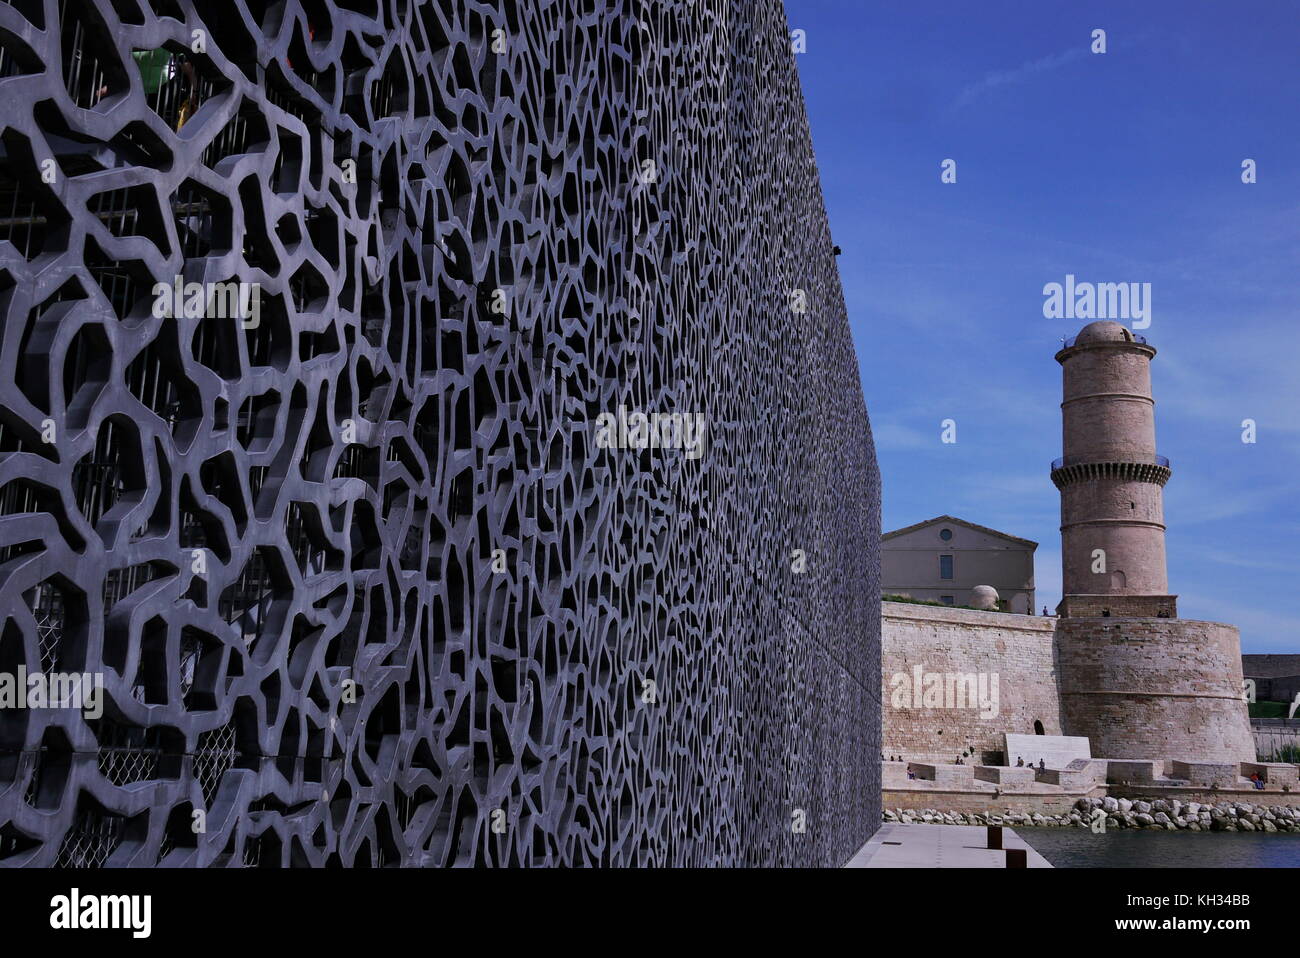 Allgemeine Ansichten des Viertels La Joliette Port, Marseille, Frankreich Stockfoto